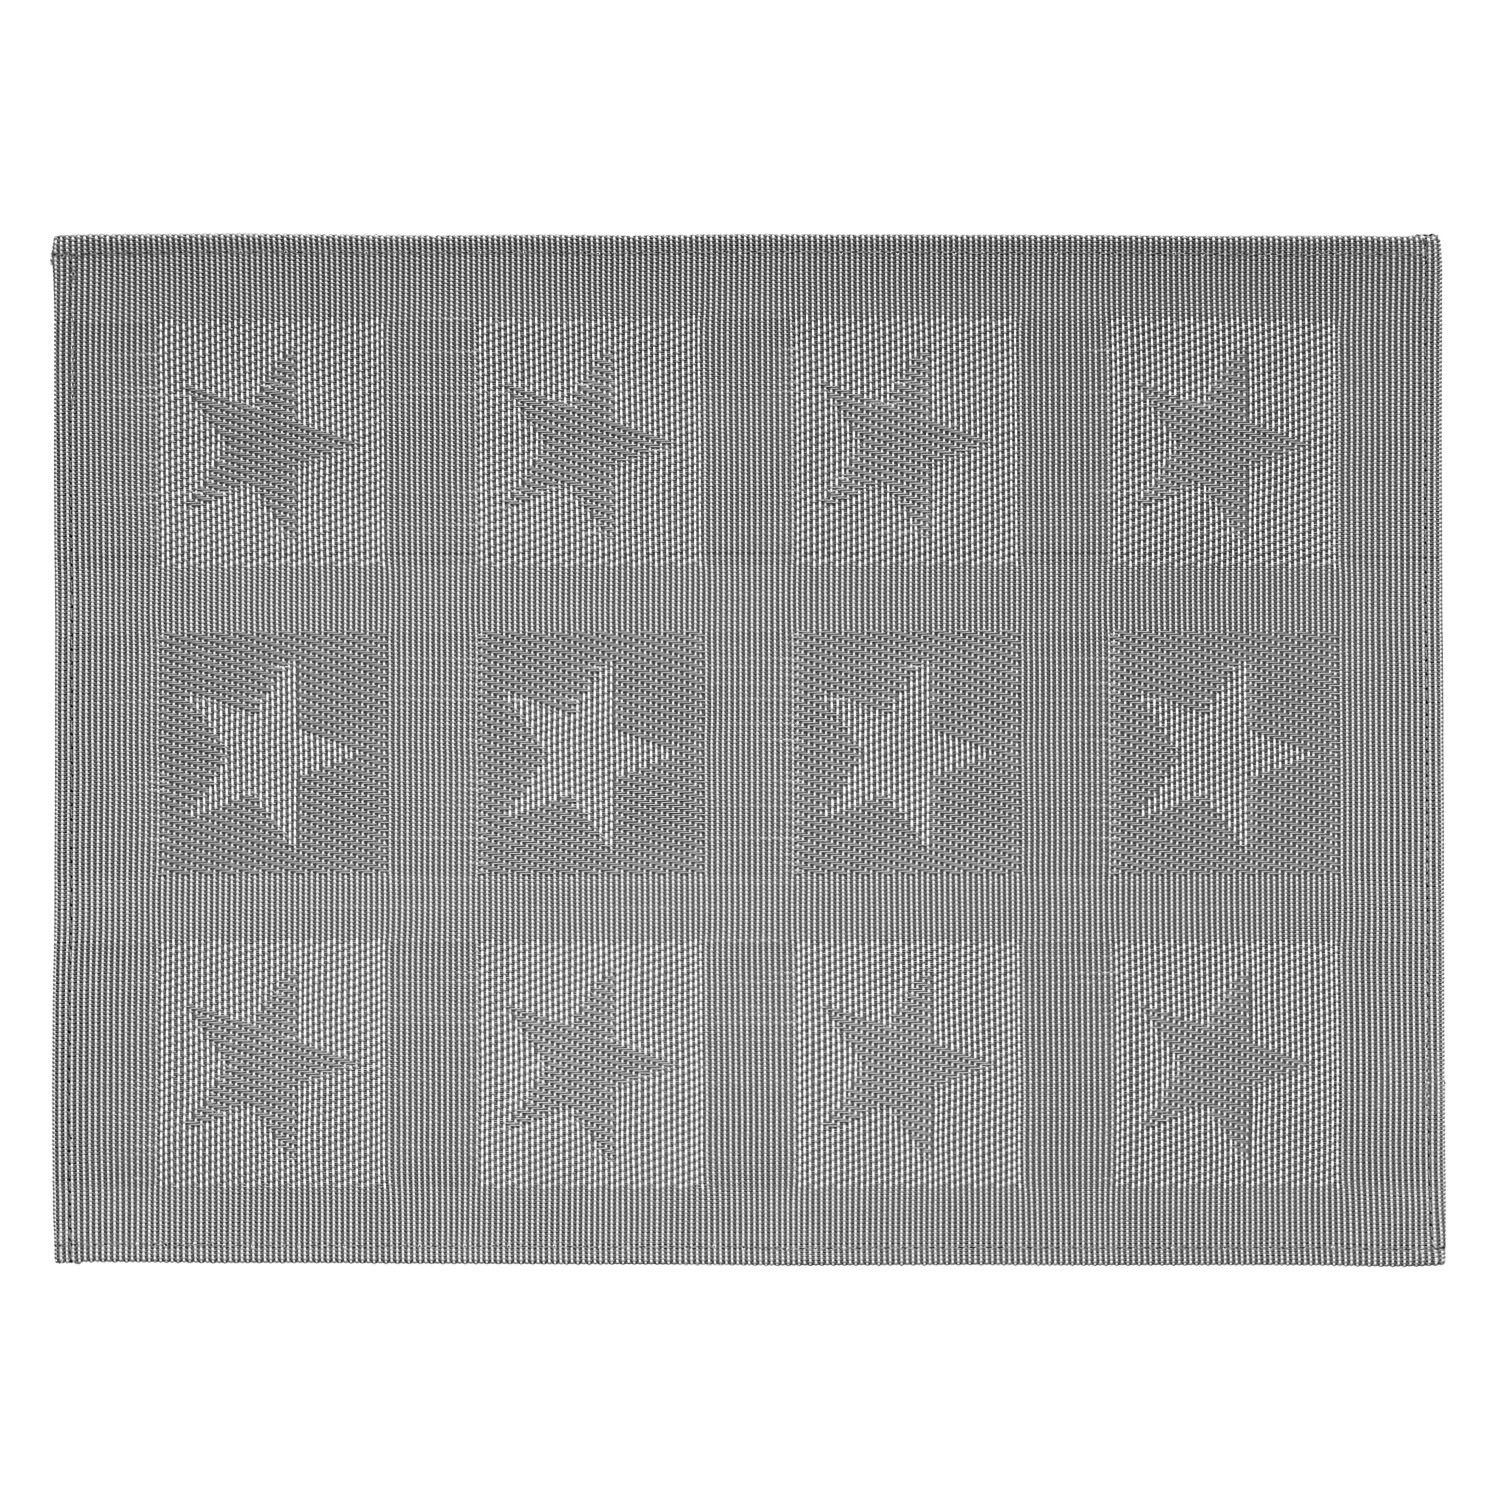 Tischset Star - Farbe grau